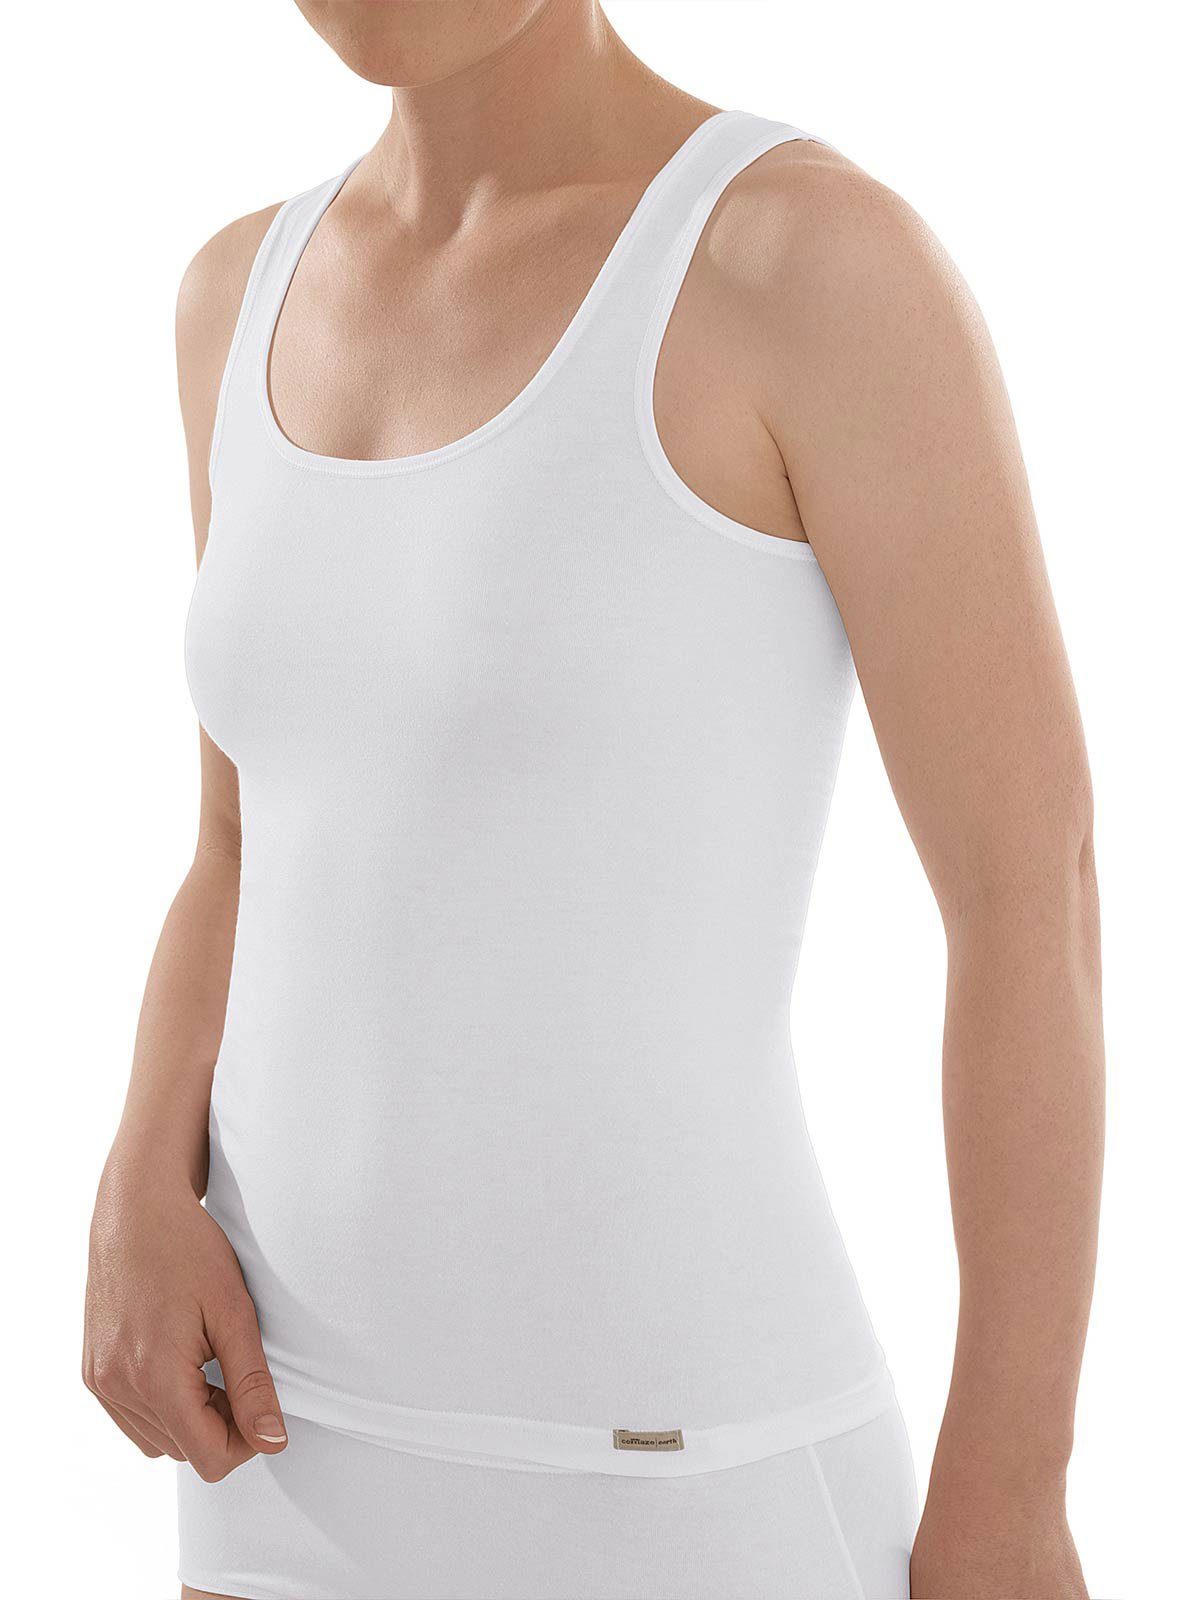 COMAZO Achselhemd Baumwoll Damen Achselunterhemd (Stück, 1-St) Vegan weiss | Ärmellose Unterhemden